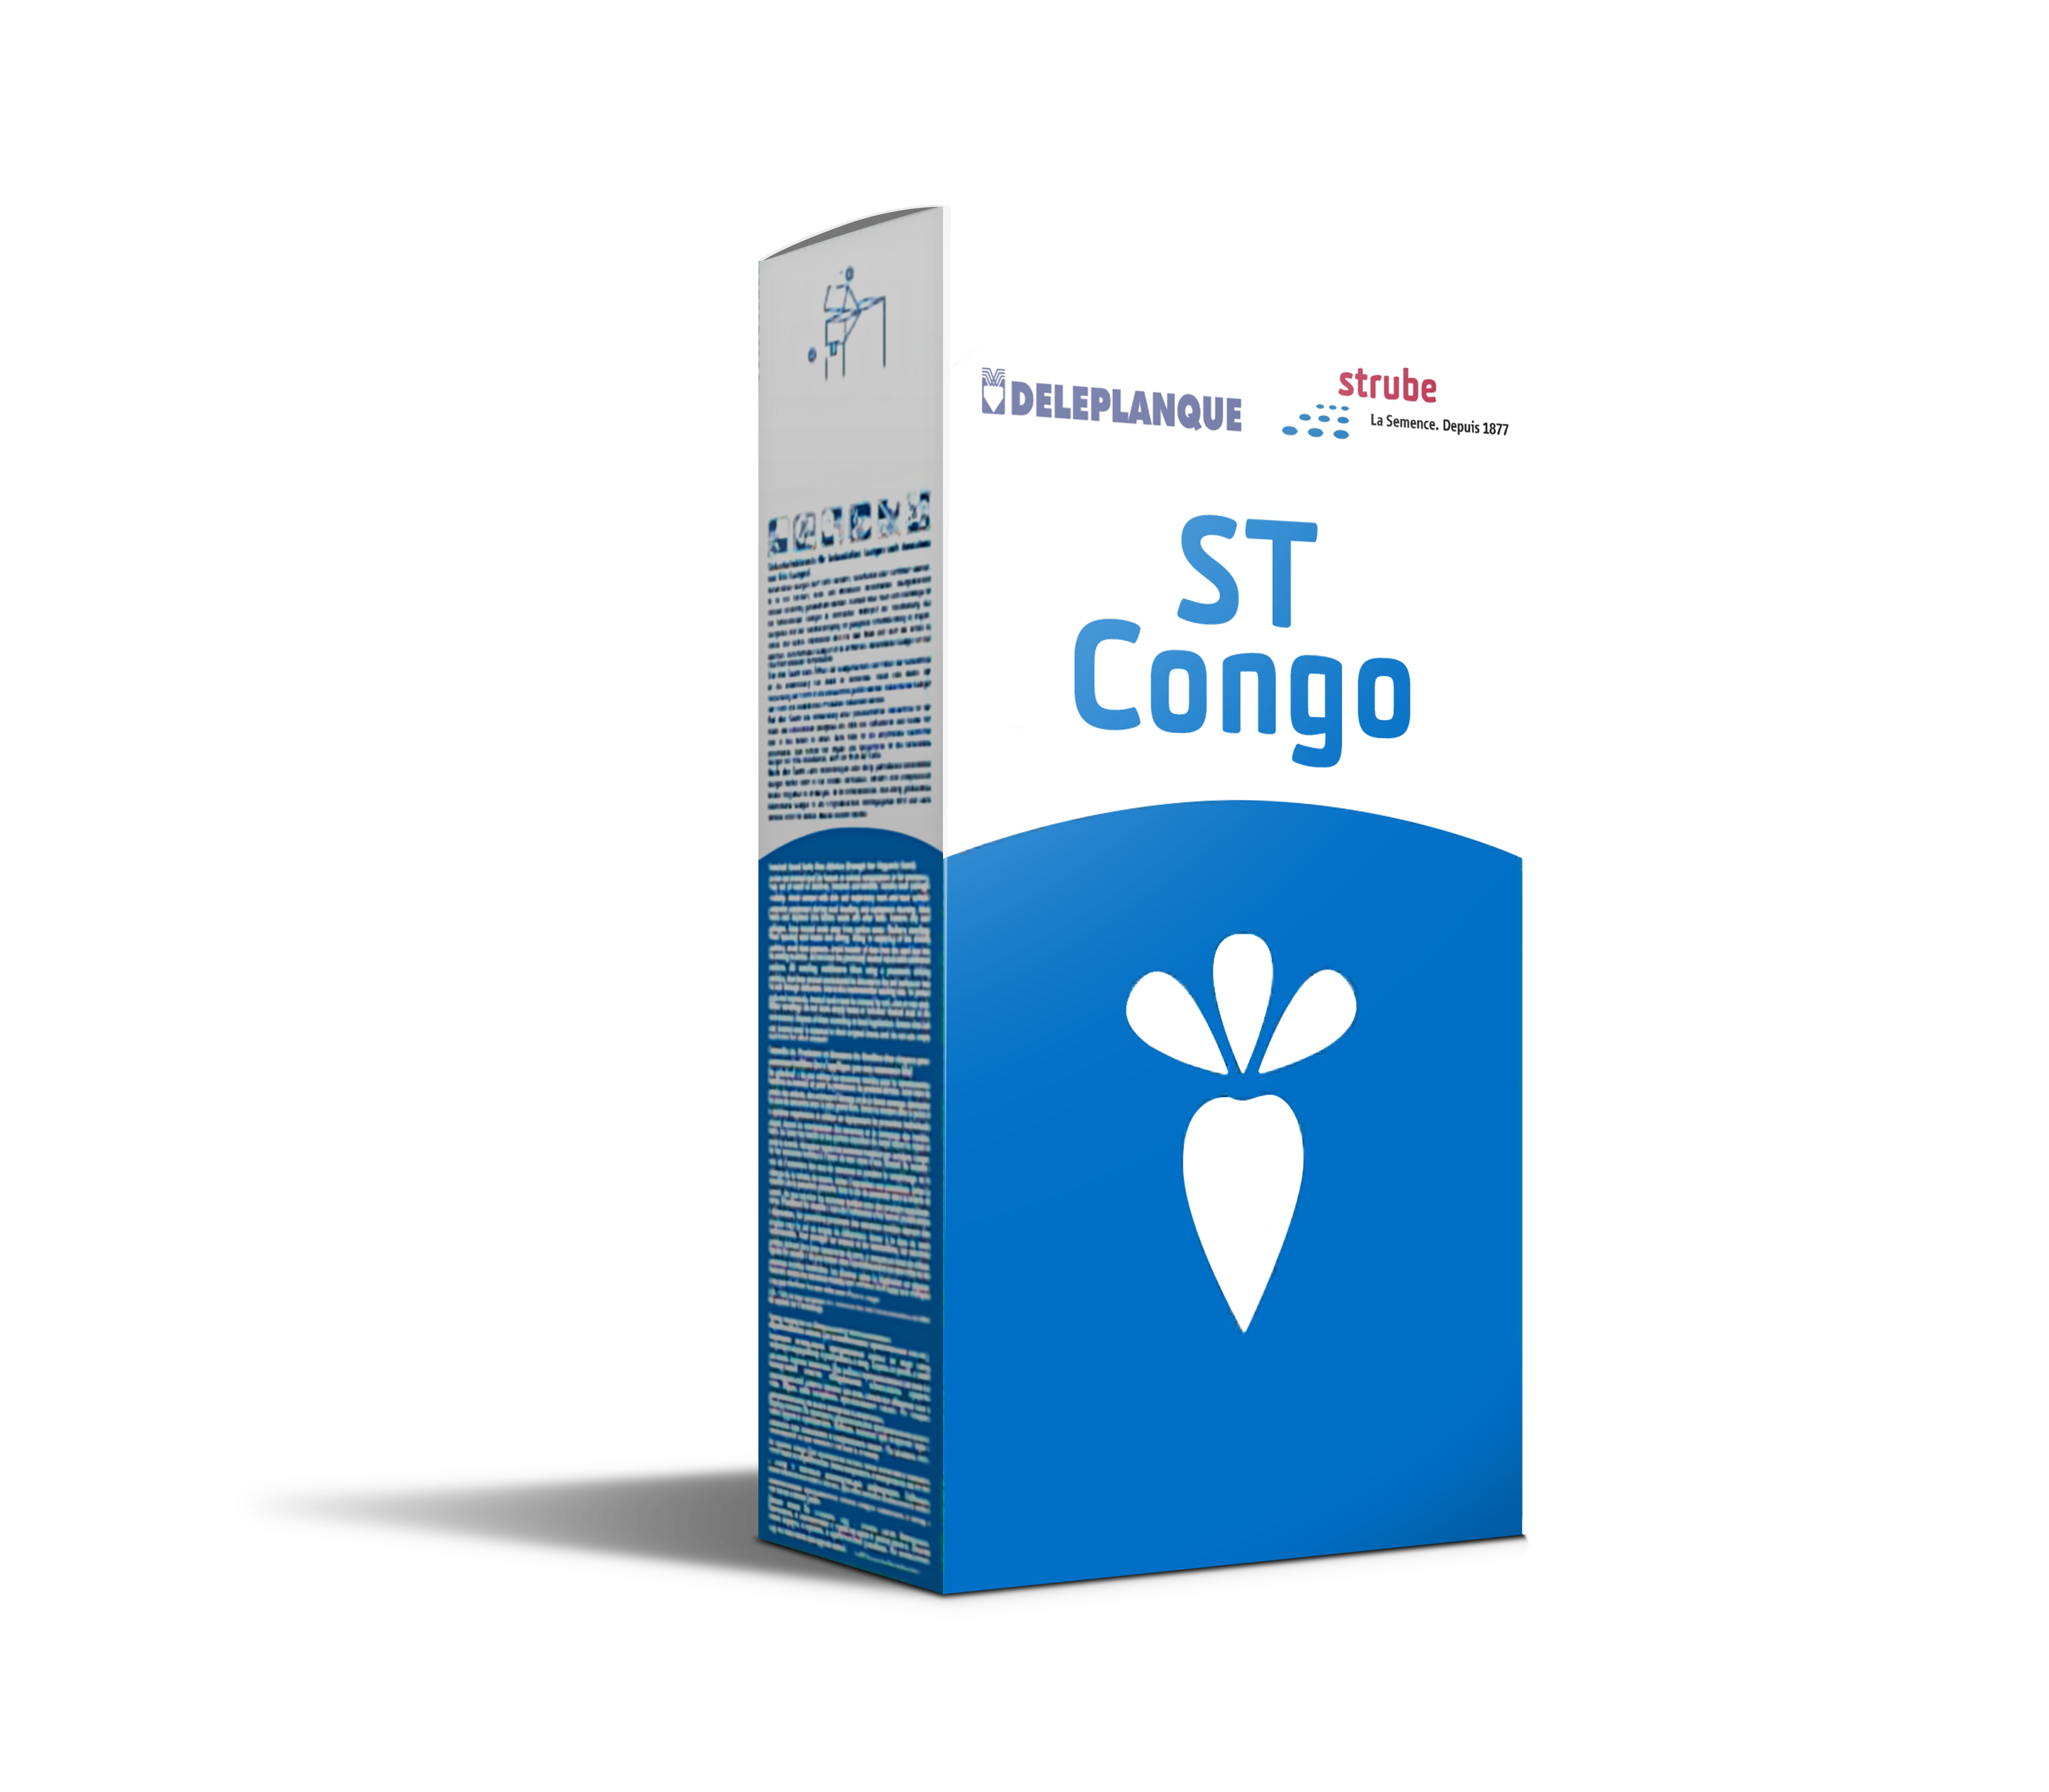 Visuel variété ST Congo